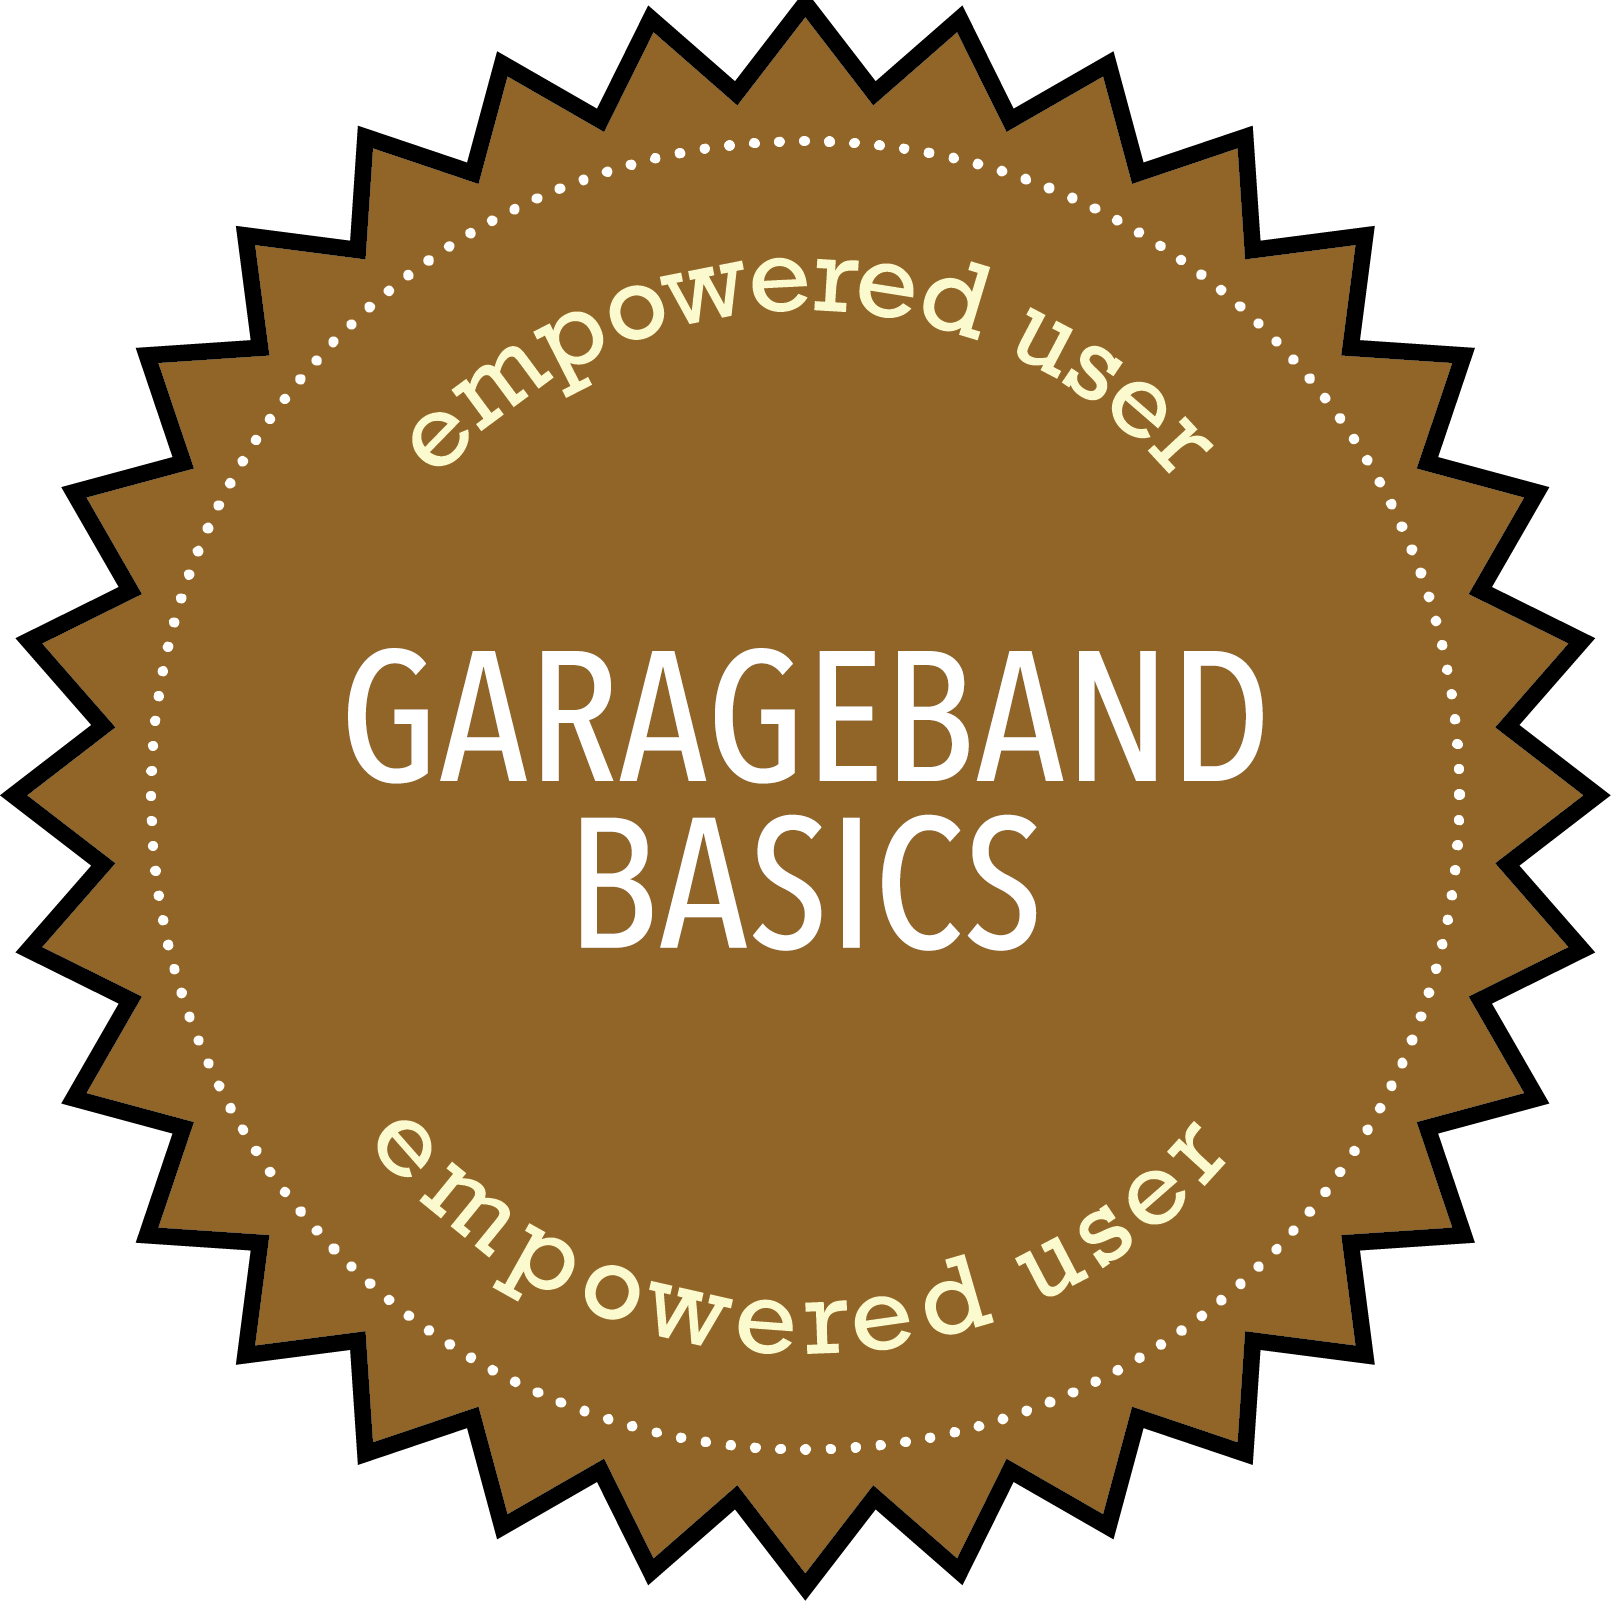 Empowered User Garageband Basics